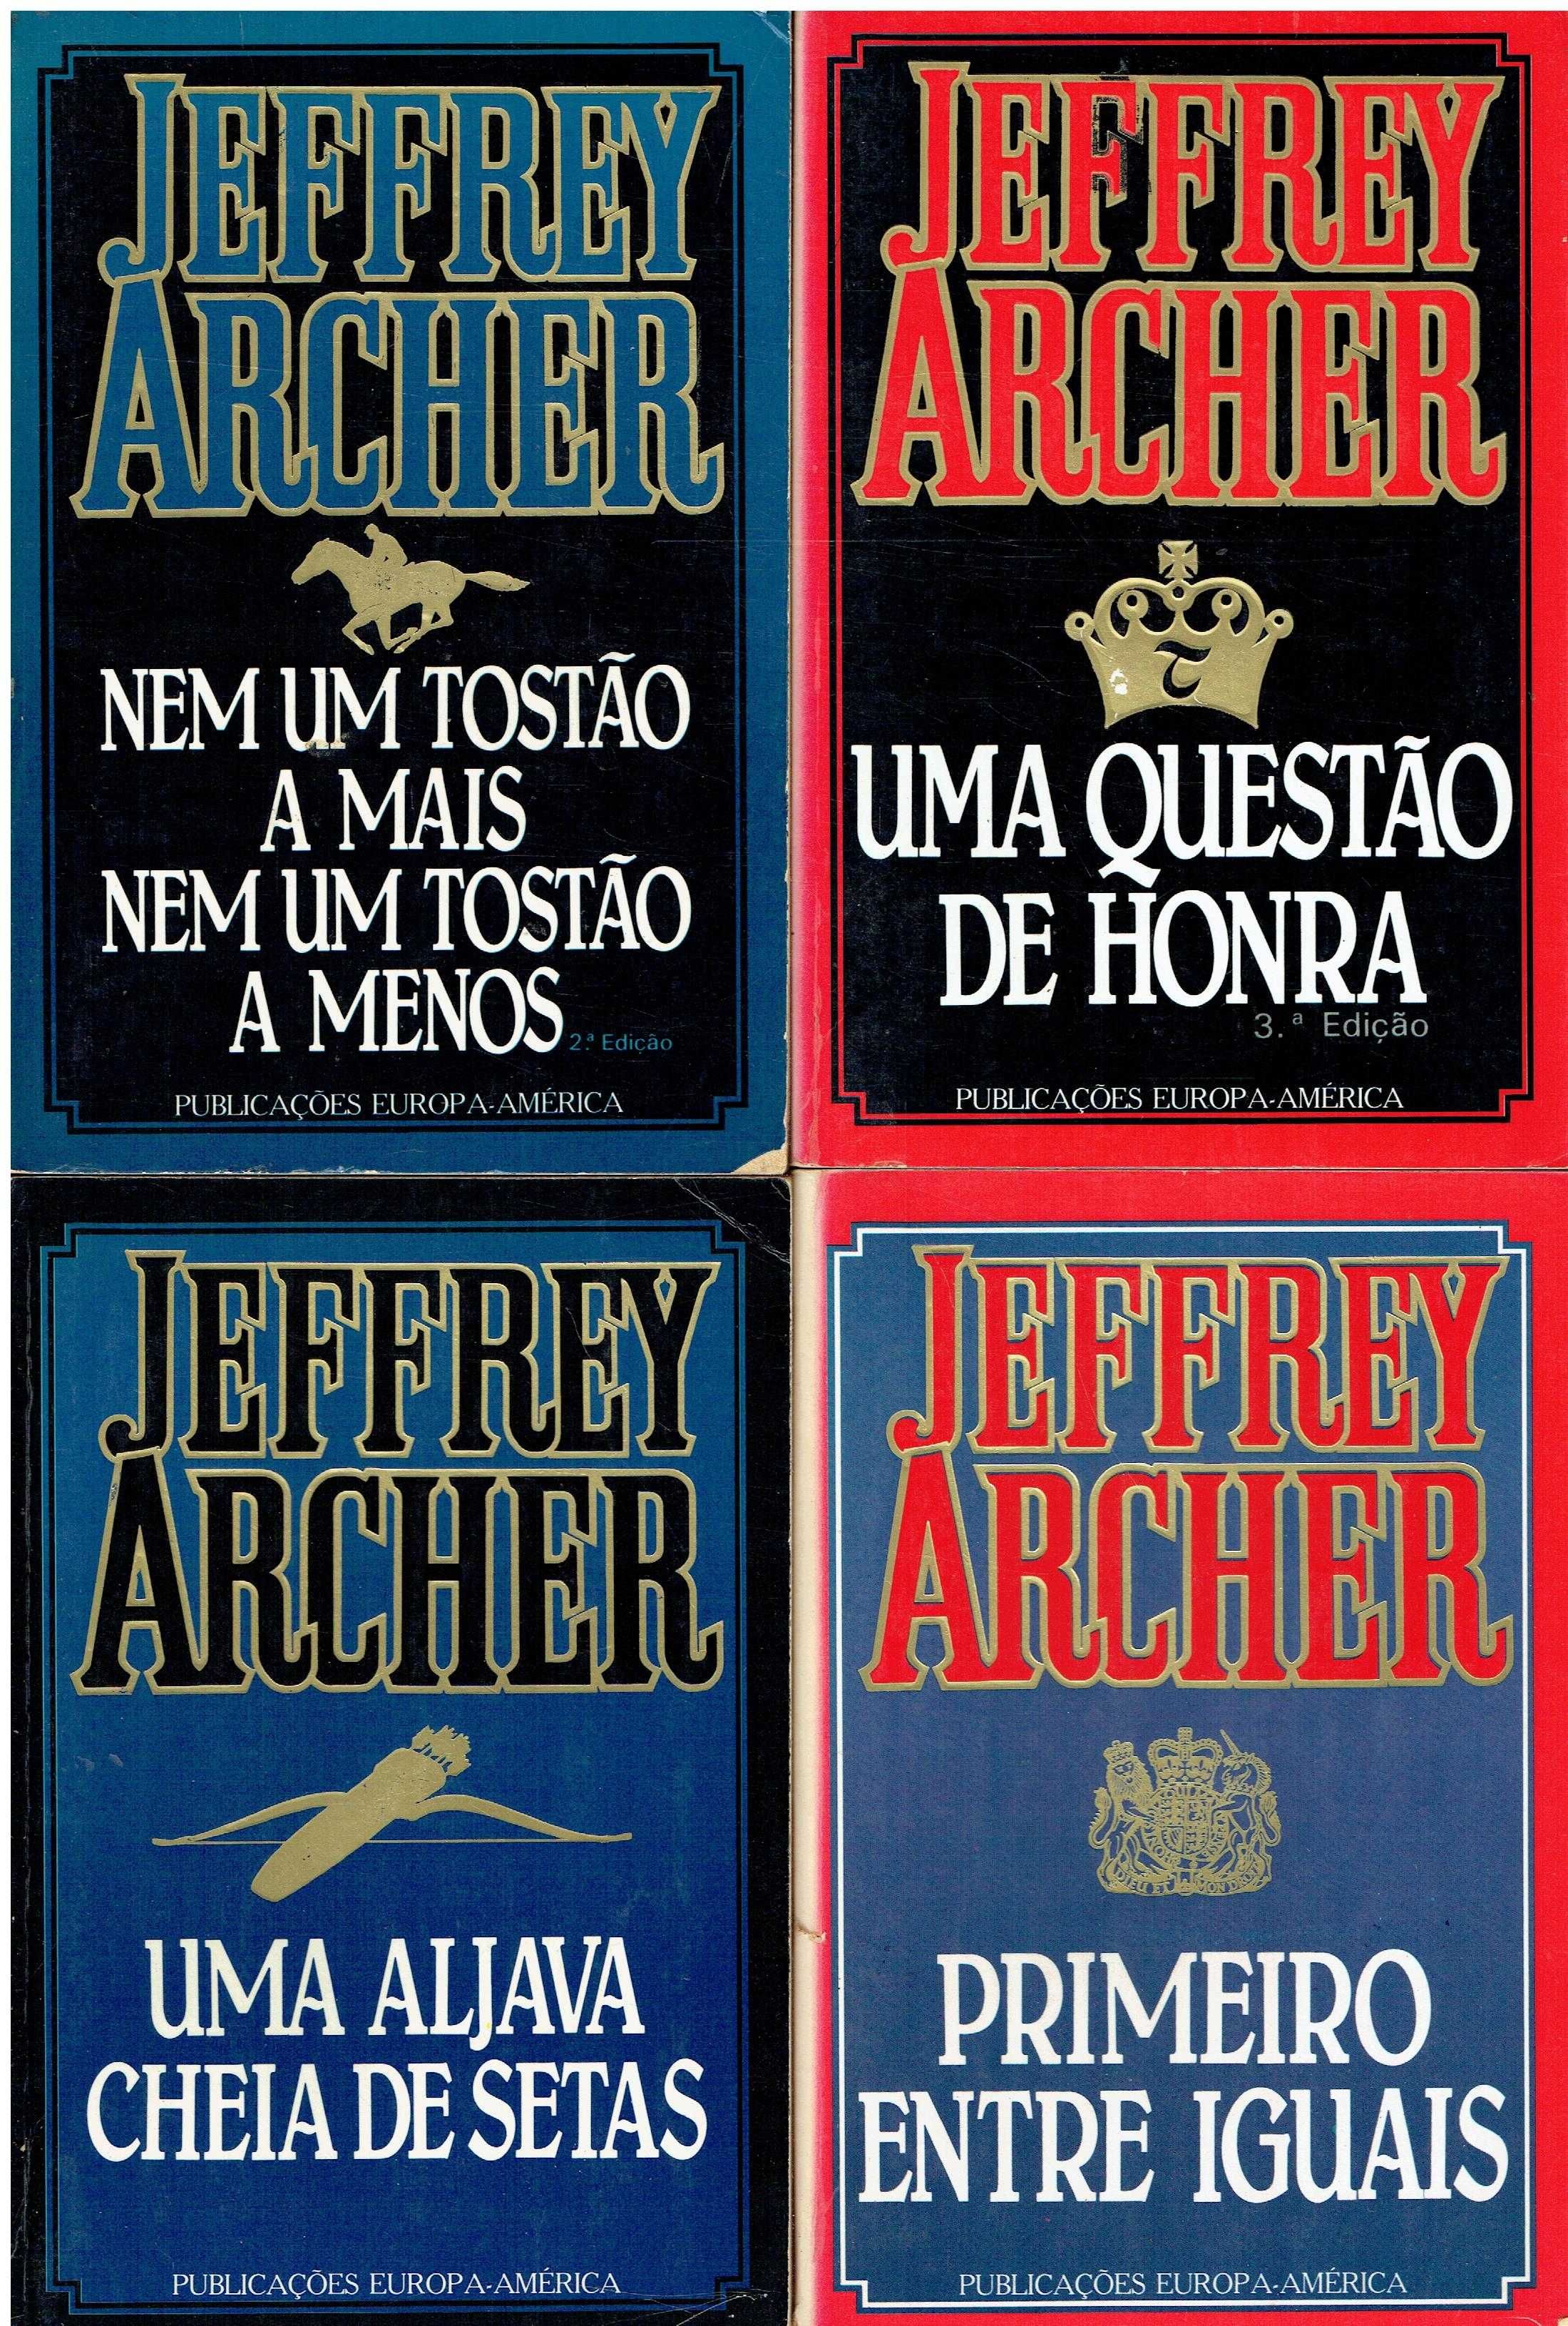 13688

Livros de Jeffrey Archer